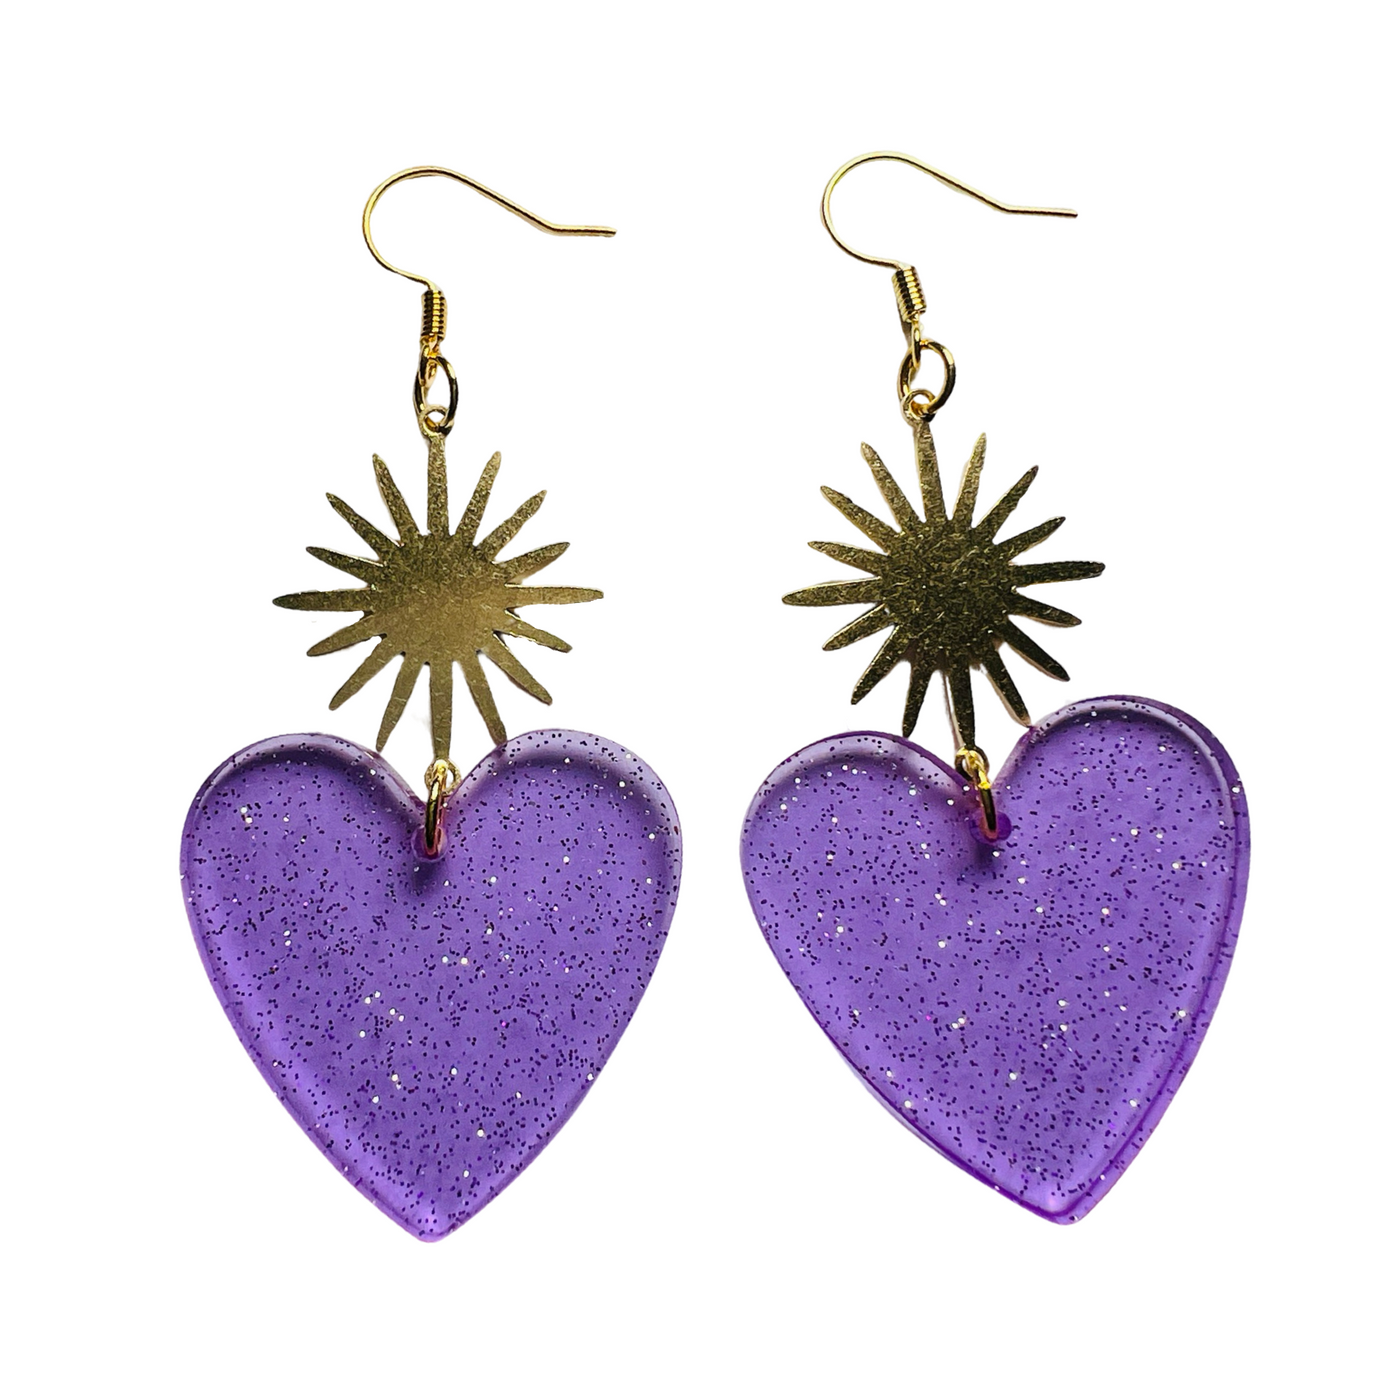 set of purple glitter resin heart earrings with a brass sunburst